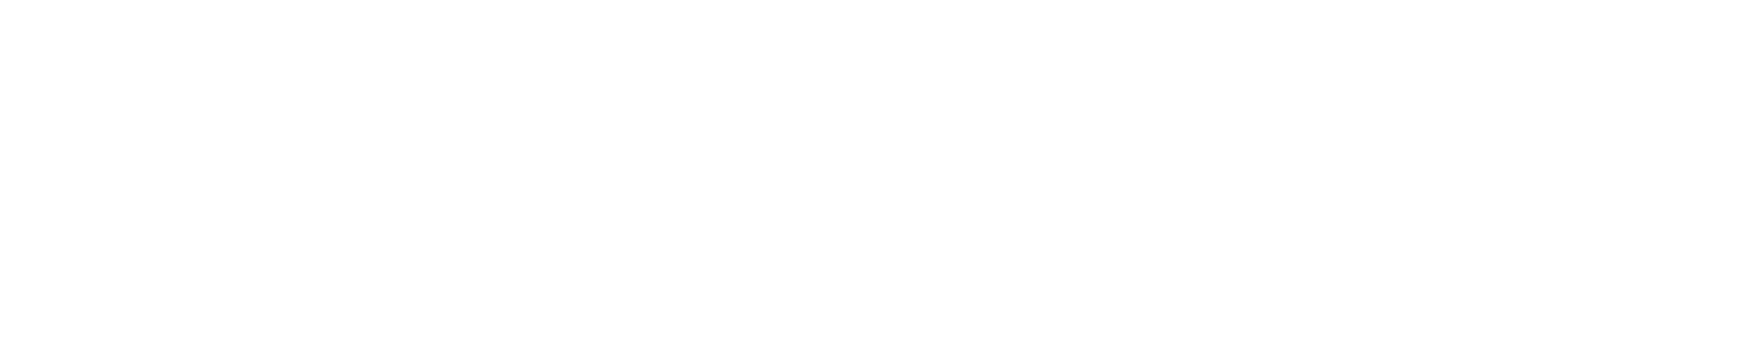 Plan de recuperacion transformacion y resiliencia